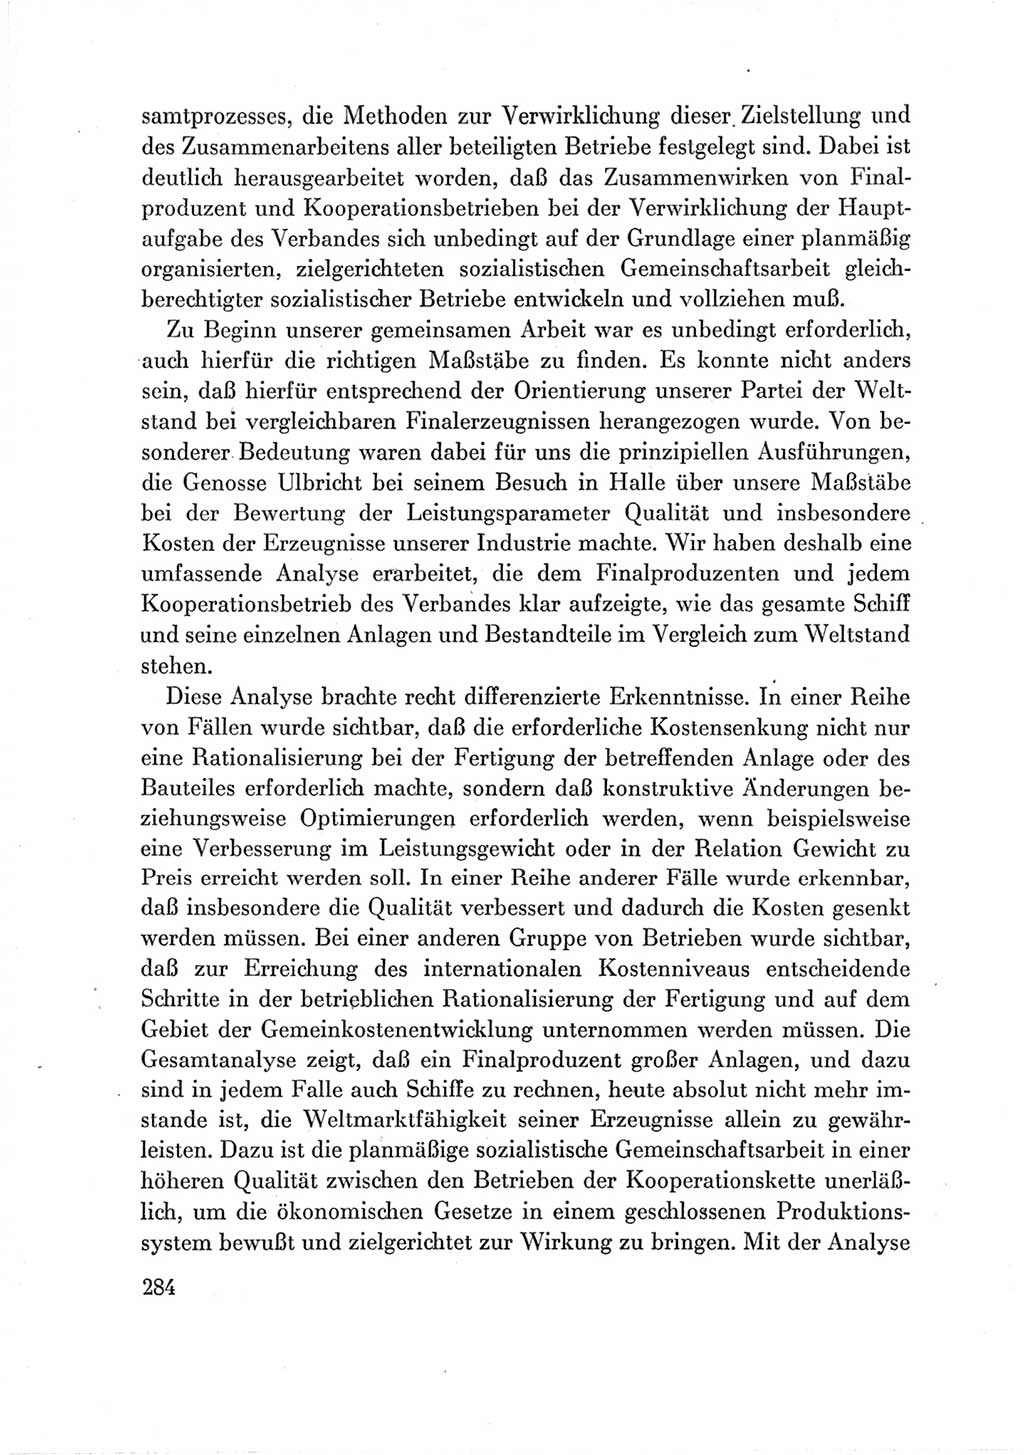 Protokoll der Verhandlungen des Ⅶ. Parteitages der Sozialistischen Einheitspartei Deutschlands (SED) [Deutsche Demokratische Republik (DDR)] 1967, Band Ⅲ, Seite 284 (Prot. Verh. Ⅶ. PT SED DDR 1967, Bd. Ⅲ, S. 284)